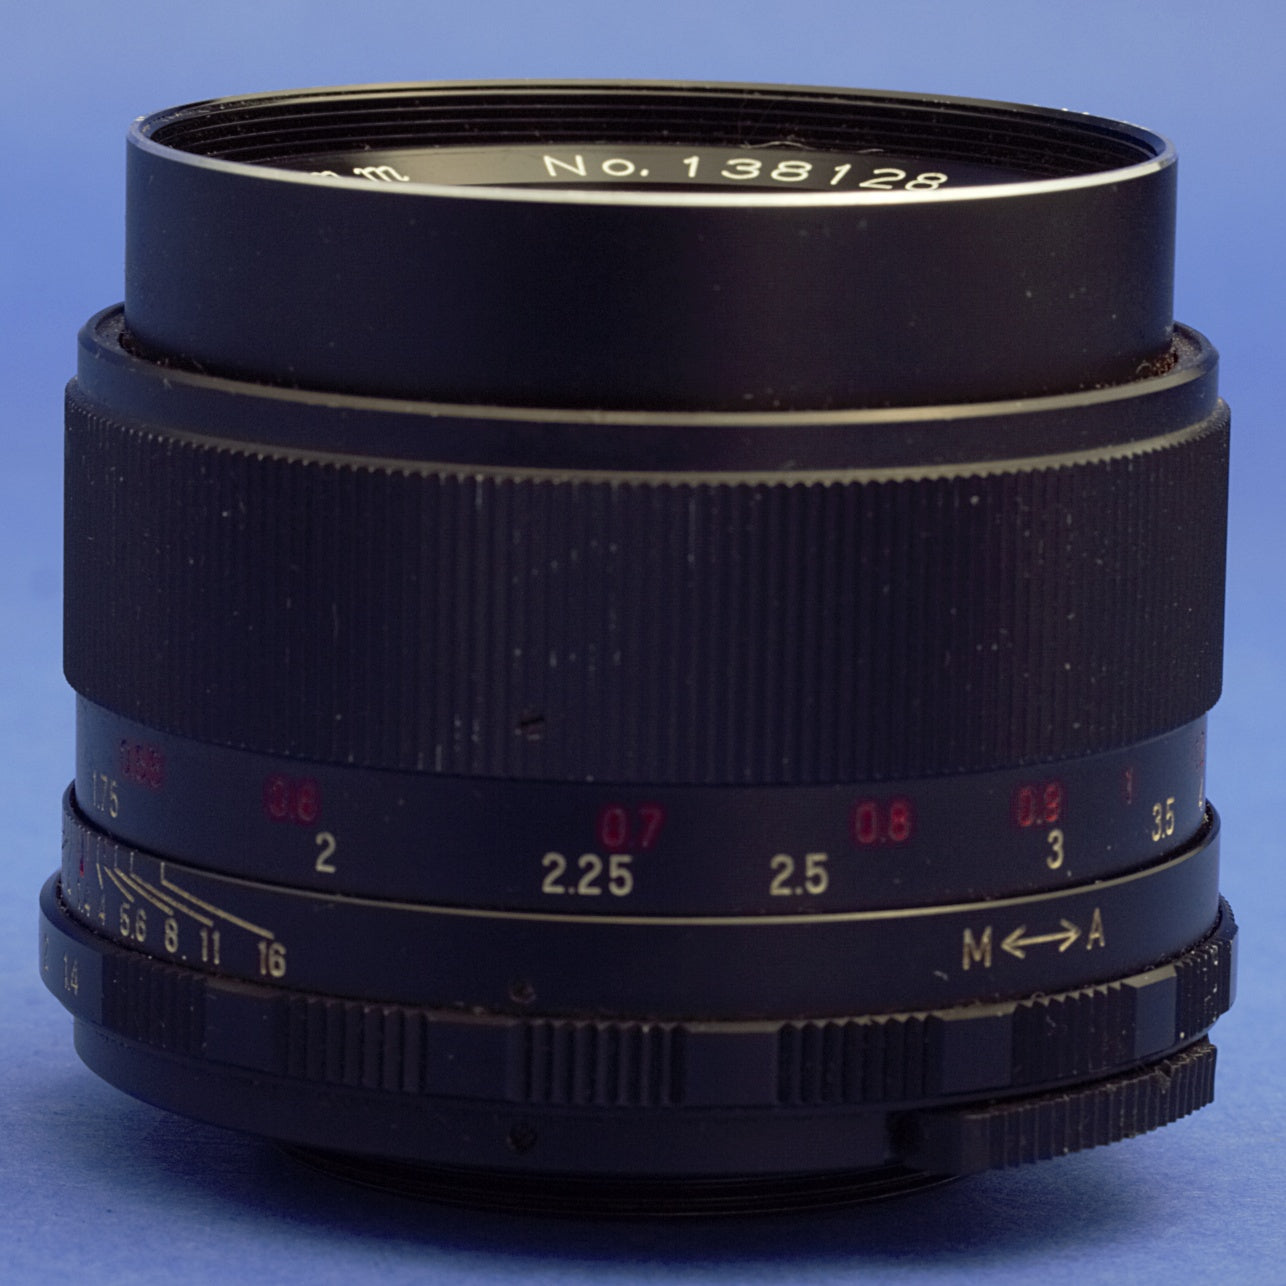 Mamiya Sekor 55mm 1.4 Lens Pentax M42 Mount